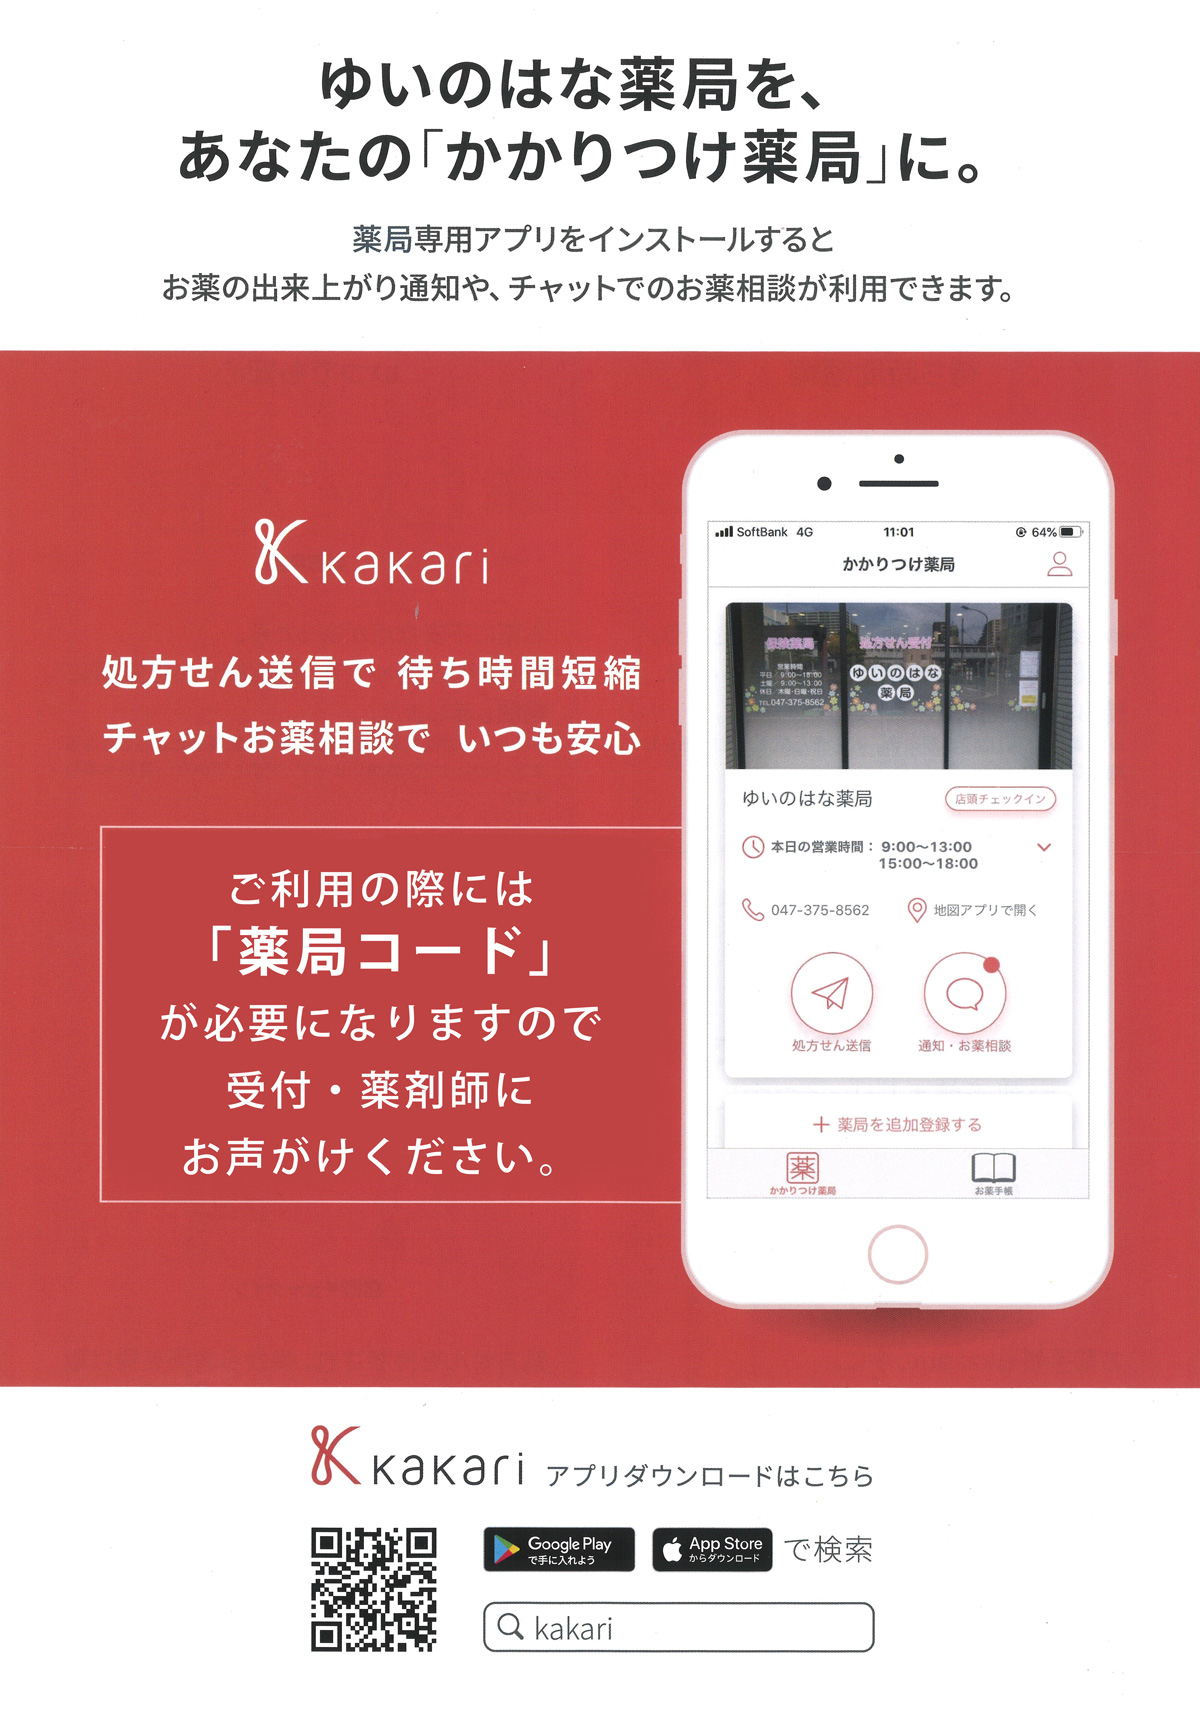 処方せん送信アプリ「kakari」